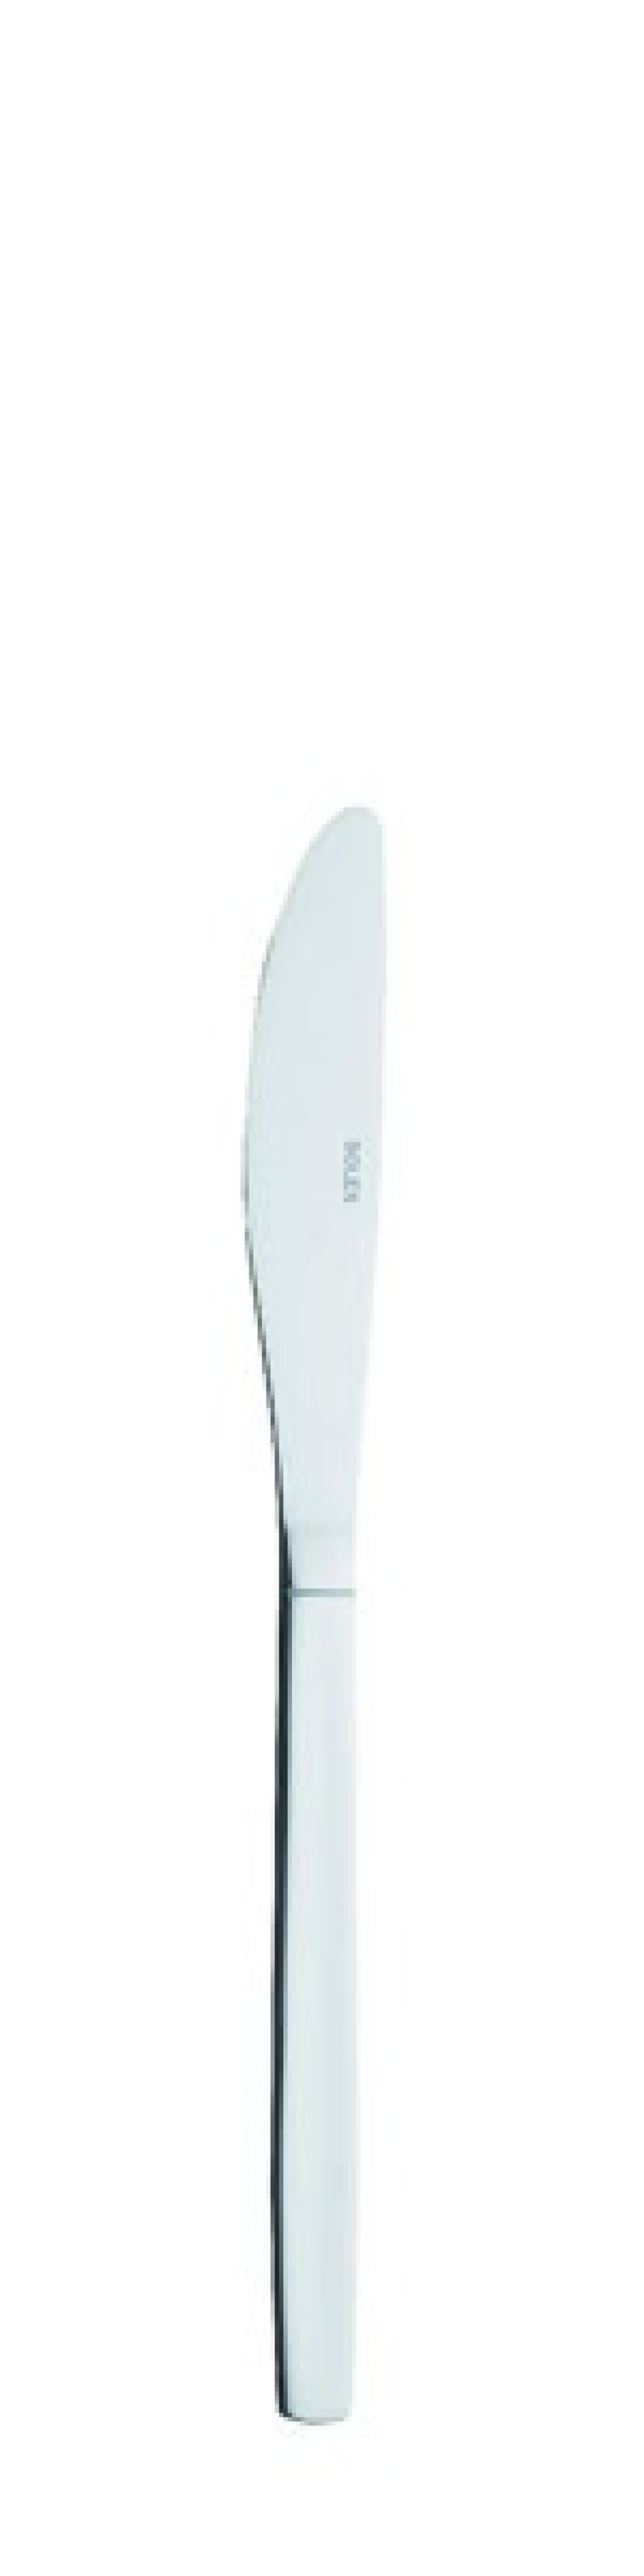 TM 80 Bordskniv 203 mm - Solex i gruppen Dukning / Bestick / Knivar hos The Kitchen Lab (1284-21405)